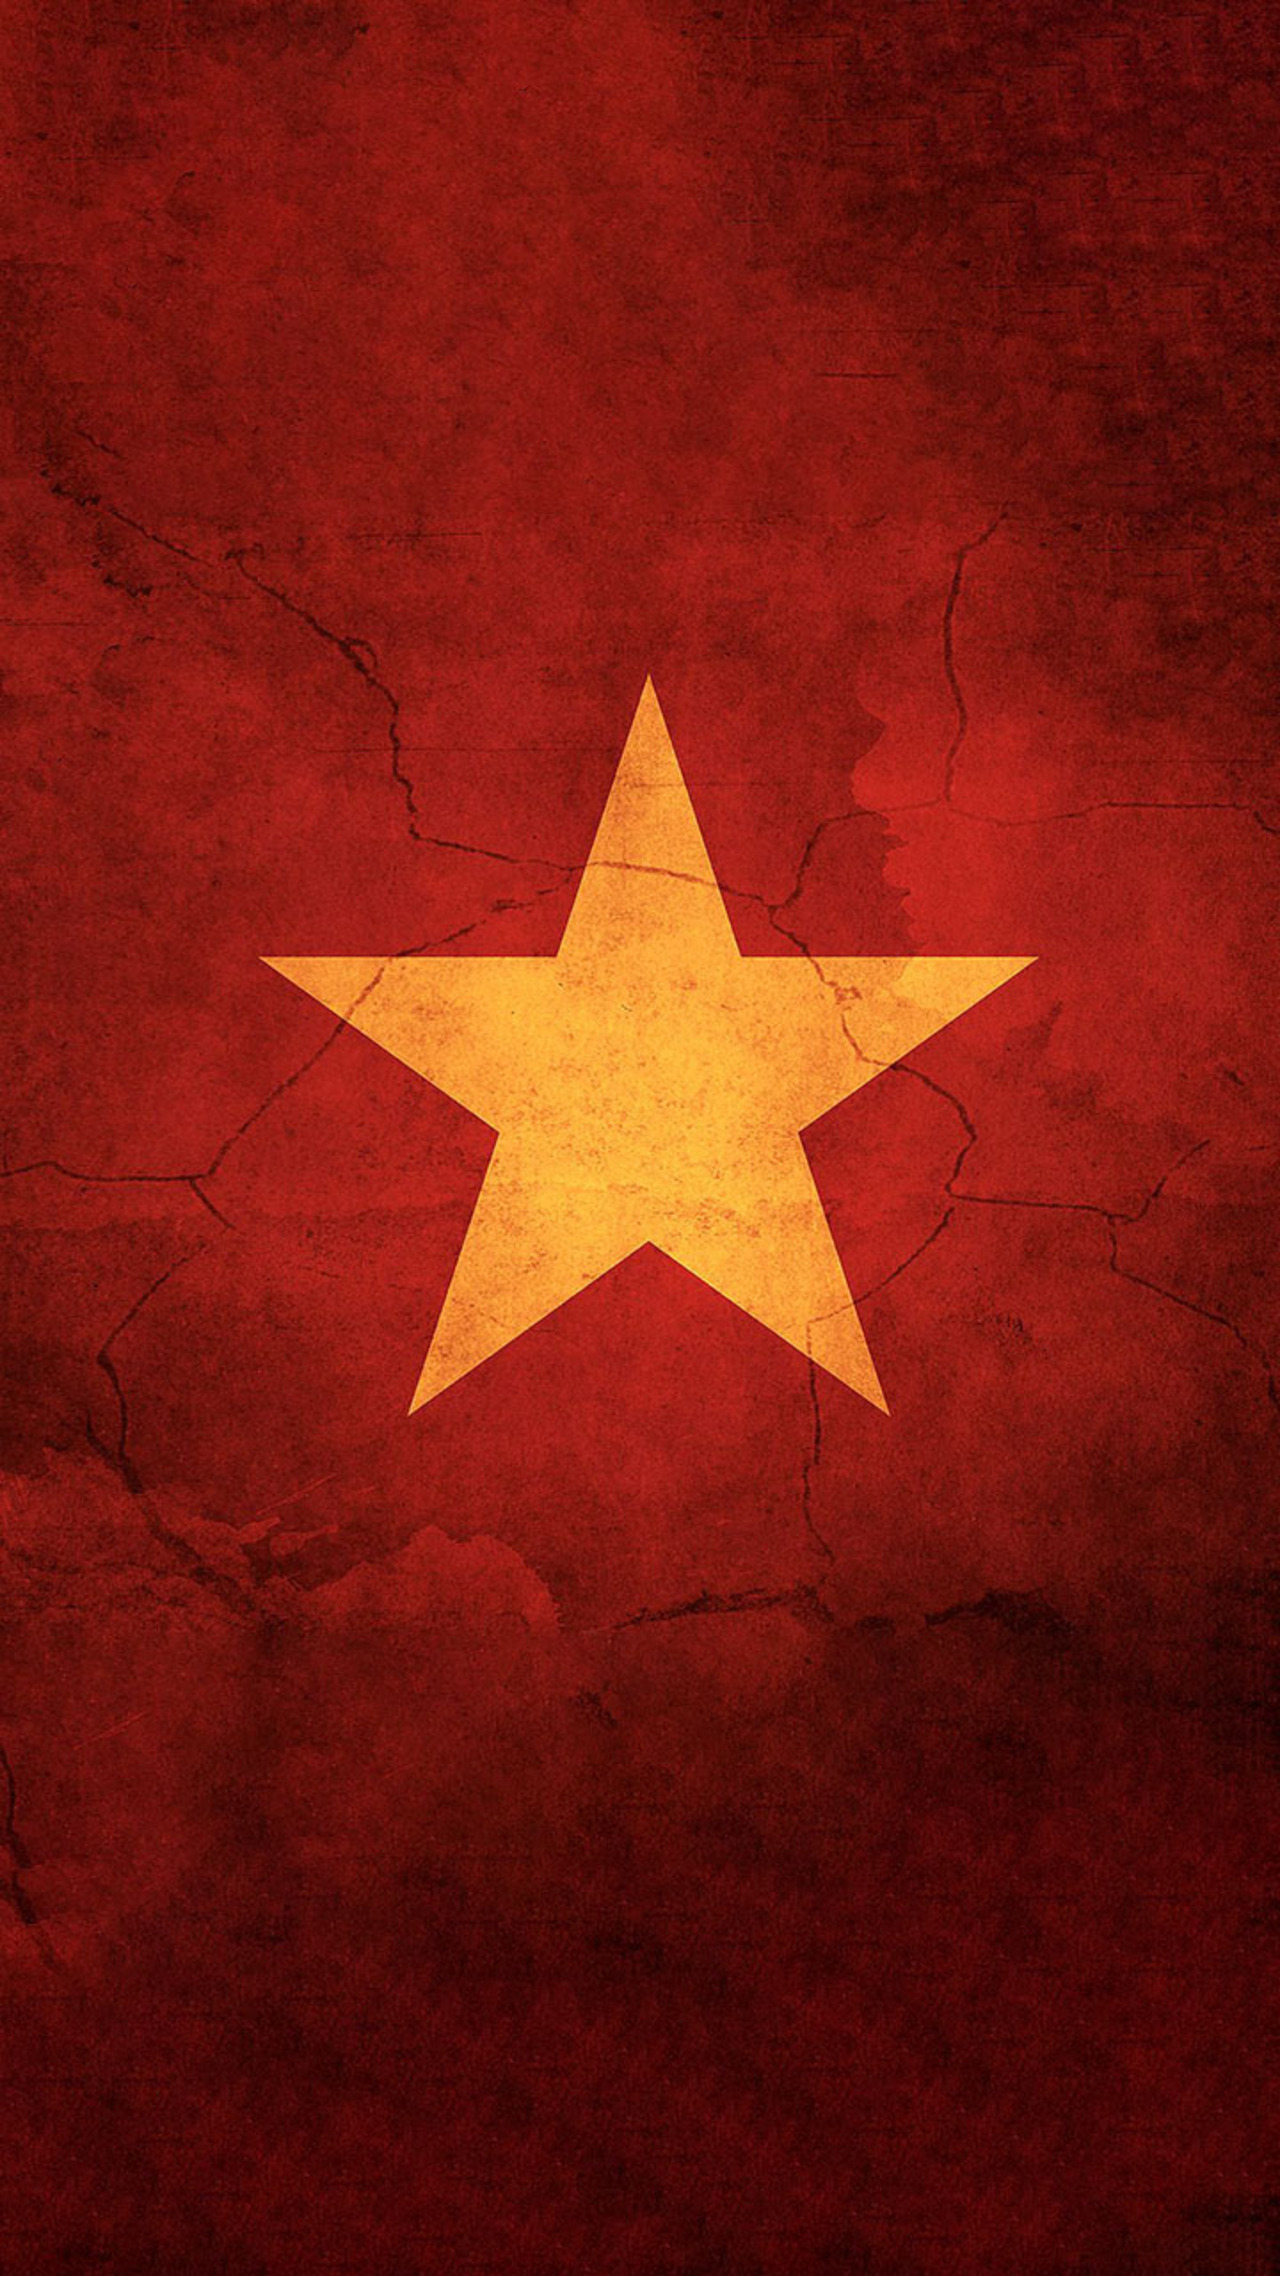 Hình nền cờ Việt Nam tình yêu nước: Tình yêu đất nước là động lực để xây dựng một tương lai tốt đẹp hơn cho Việt Nam. Hình nền cờ Việt Nam tình yêu nước là cách tuyệt vời để thể hiện sự tự hào và tình yêu dành cho đất nước mình. Với hình ảnh tràn đầy tình thân ái và lòng trung thành, bạn sẽ cảm thấy lòng sẽ được tràn đầy niềm tin vào tương lai tươi sáng của Việt Nam.